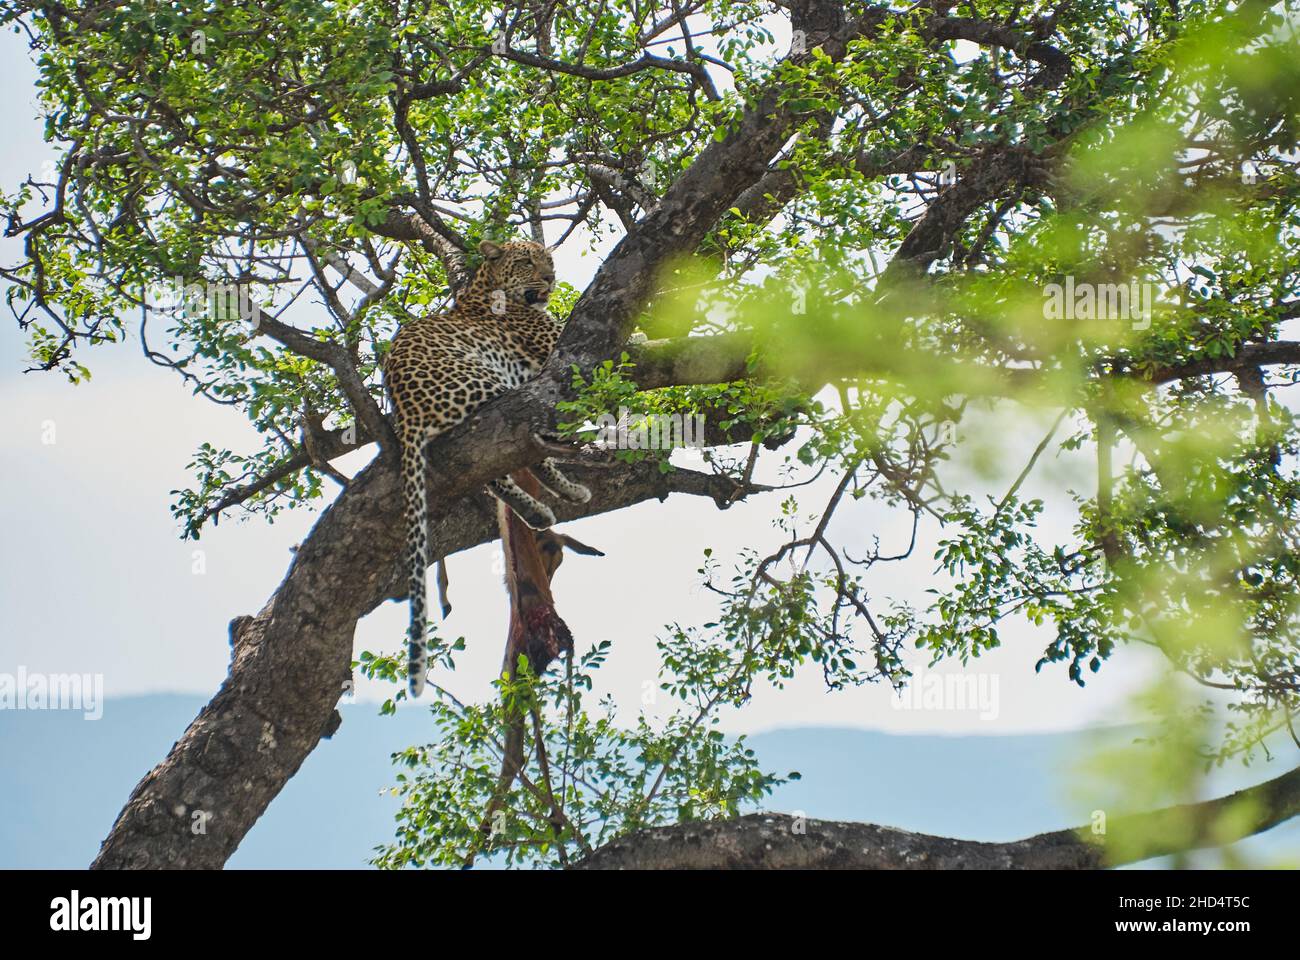 leopard, Panthera Pardus, ein großes Raubtier und eine afrikanische Wildkatze, die hoch in einem Baum sitzt und einen toten Impala als Beute hat Stockfoto